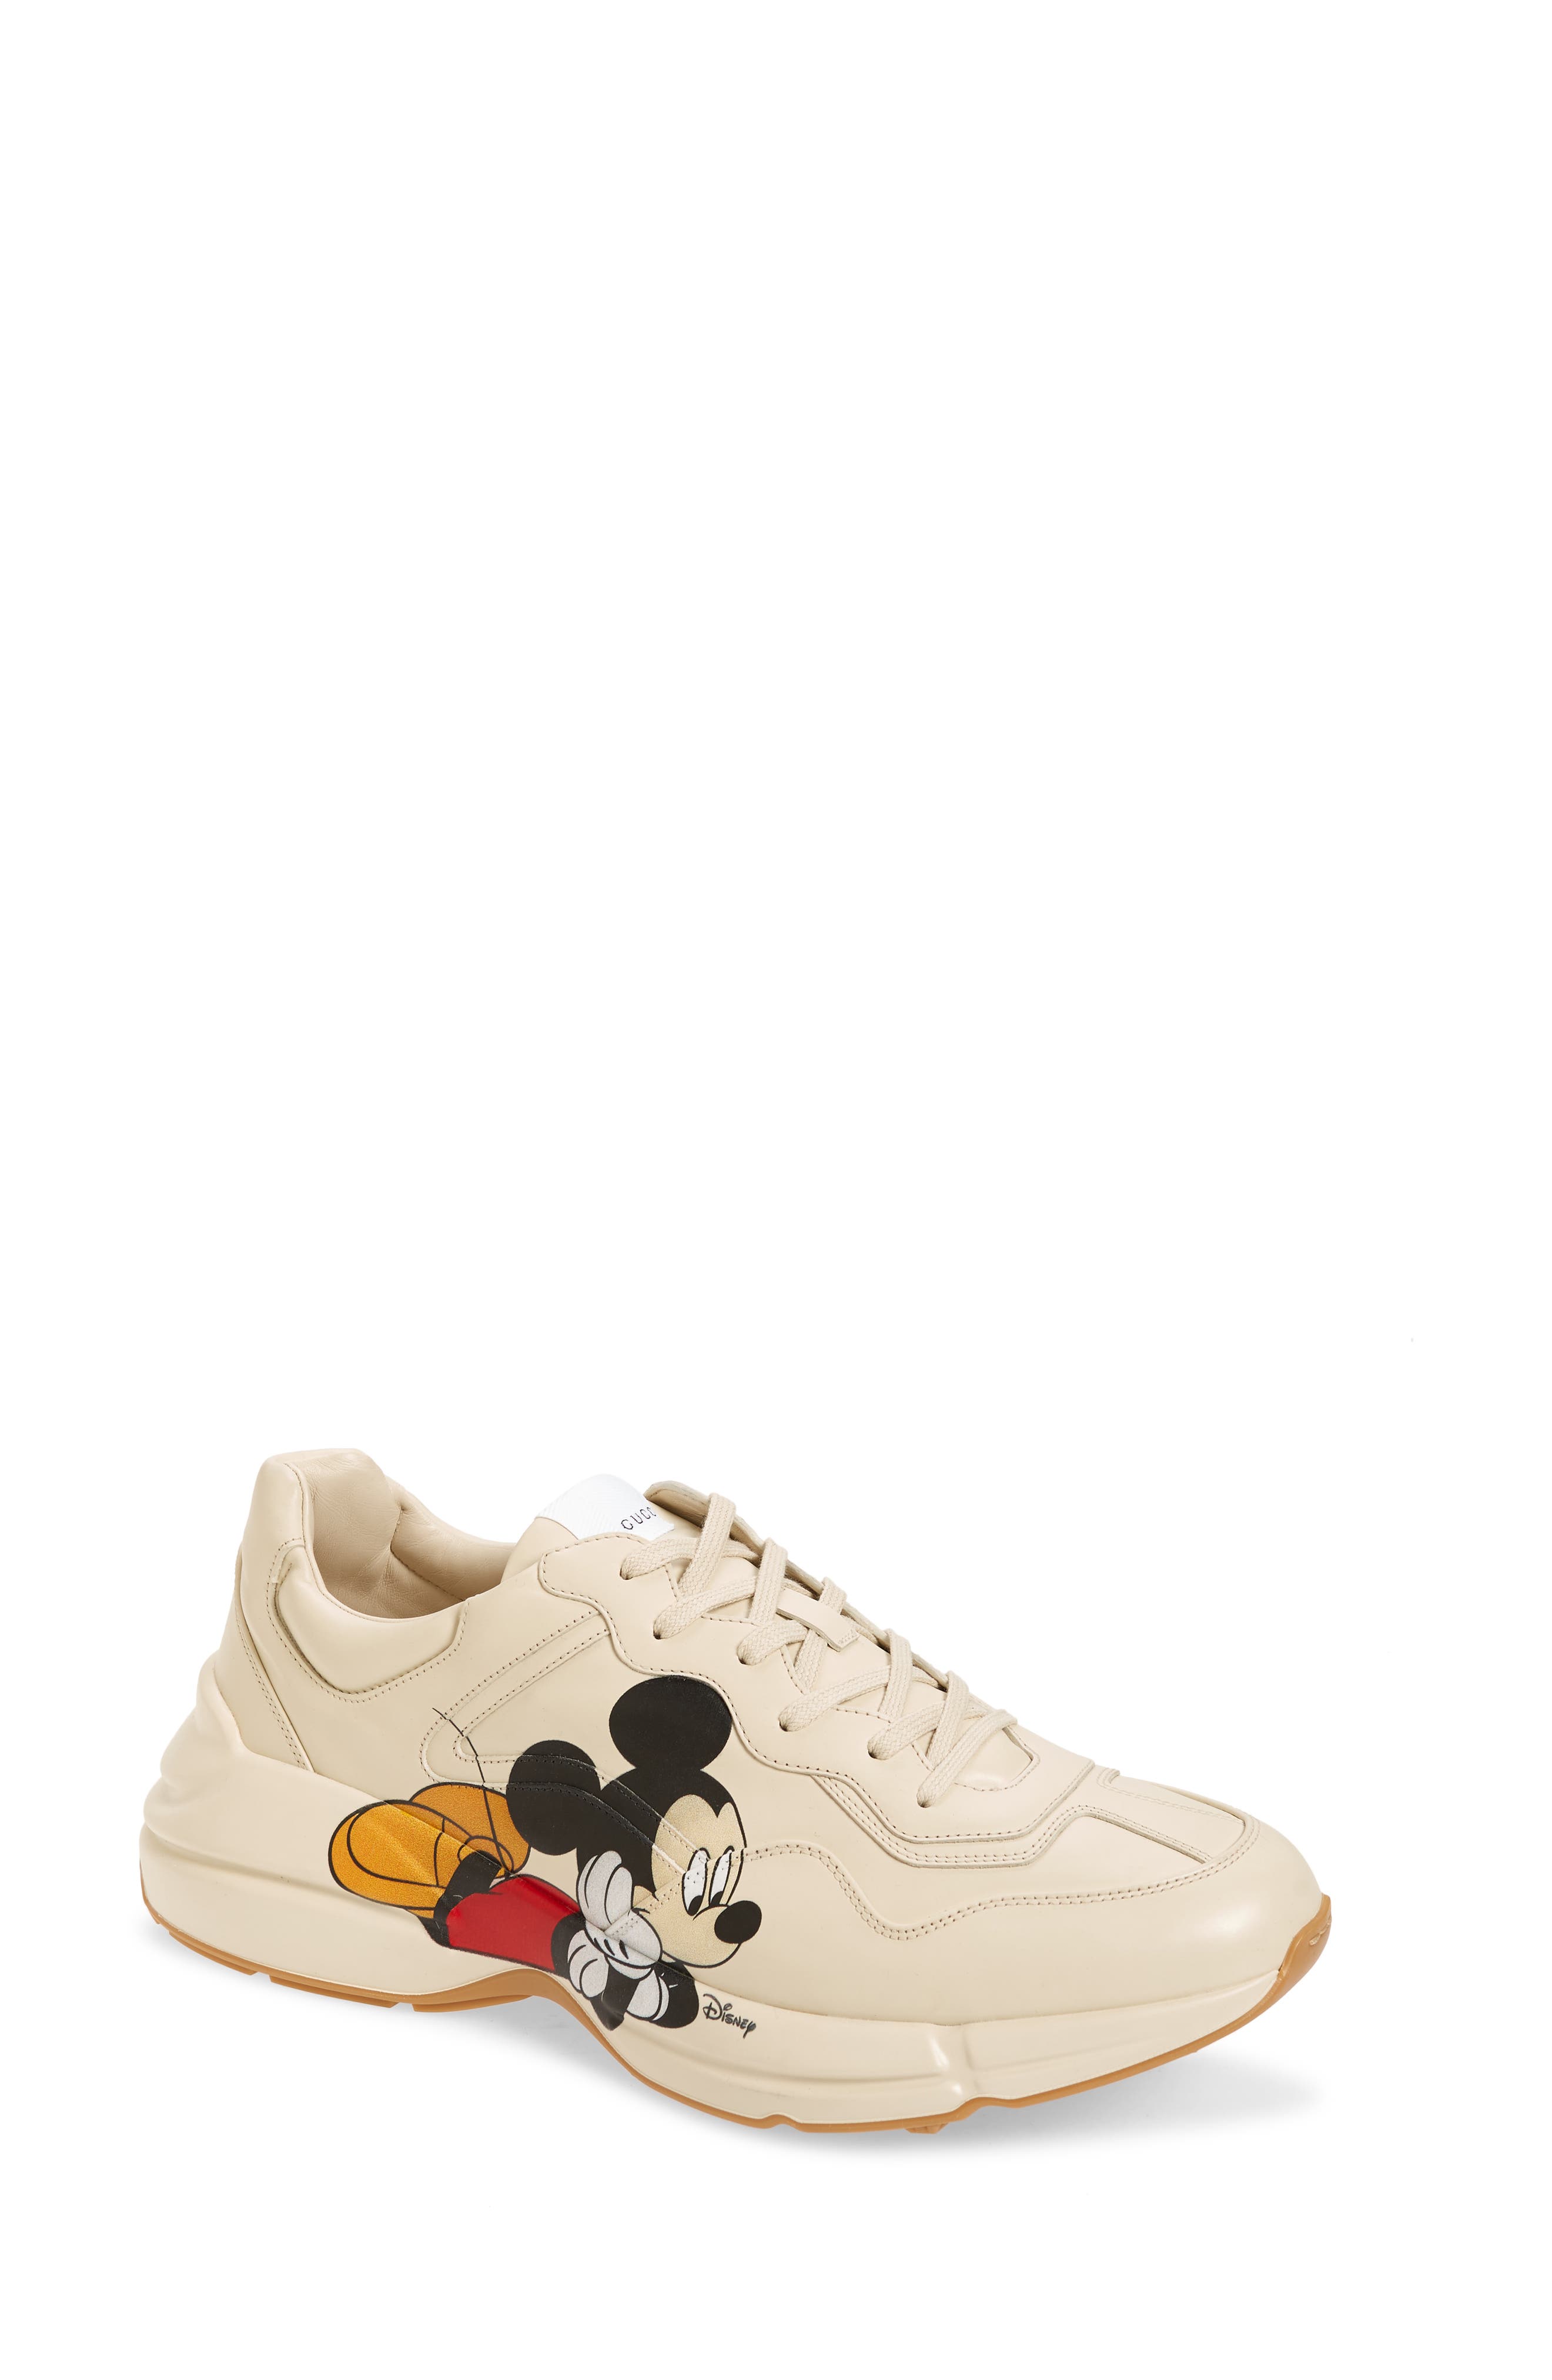 Gucci x Disney Rhyton Mickey Mouse 